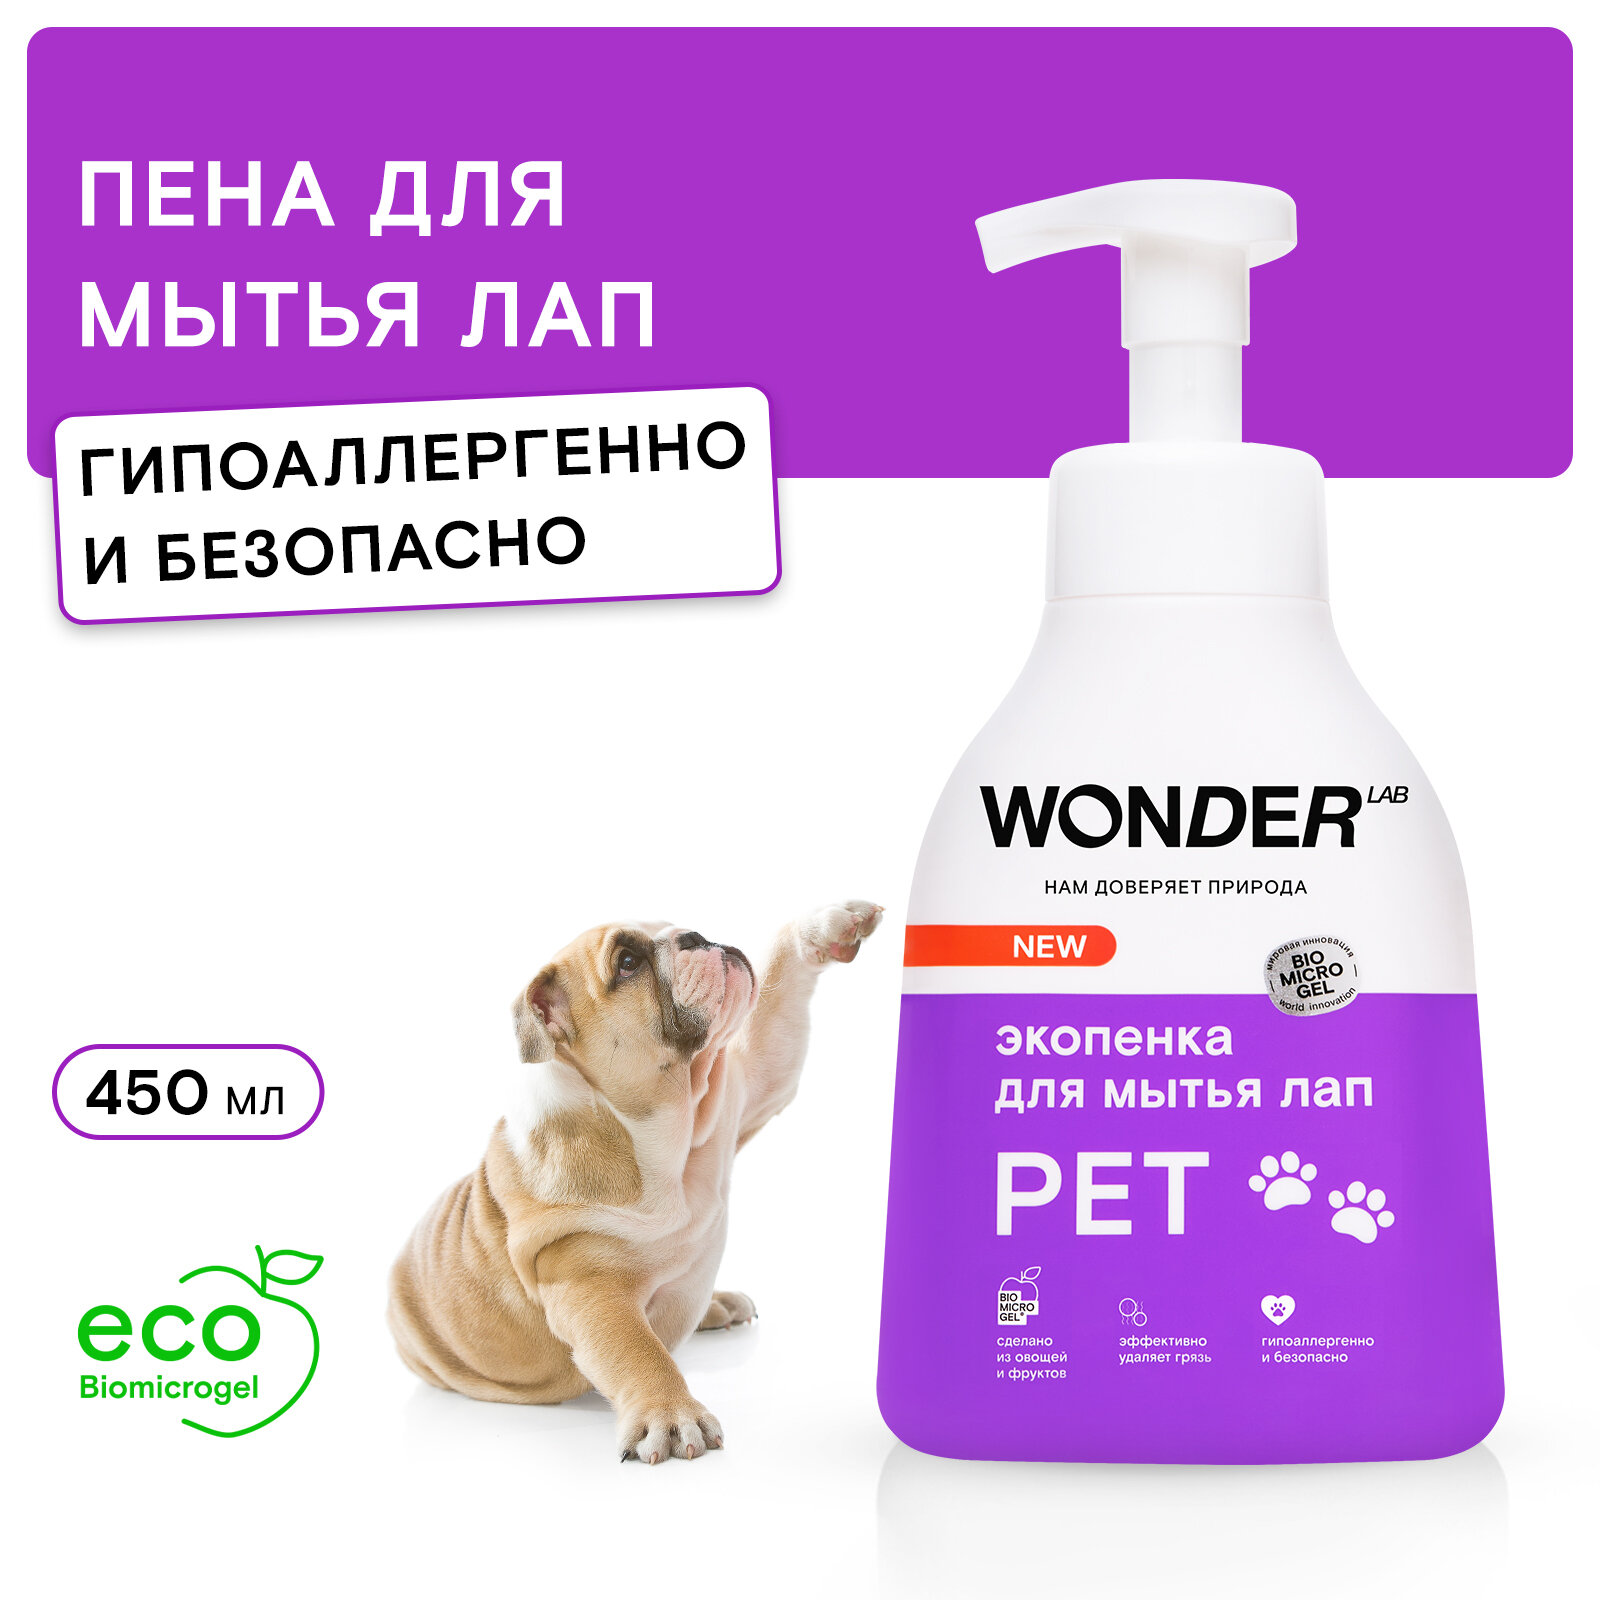 Эко пенка для мытья лап собак после прогулки WONDER LAB, 450 мл, с нейтральным ароматом